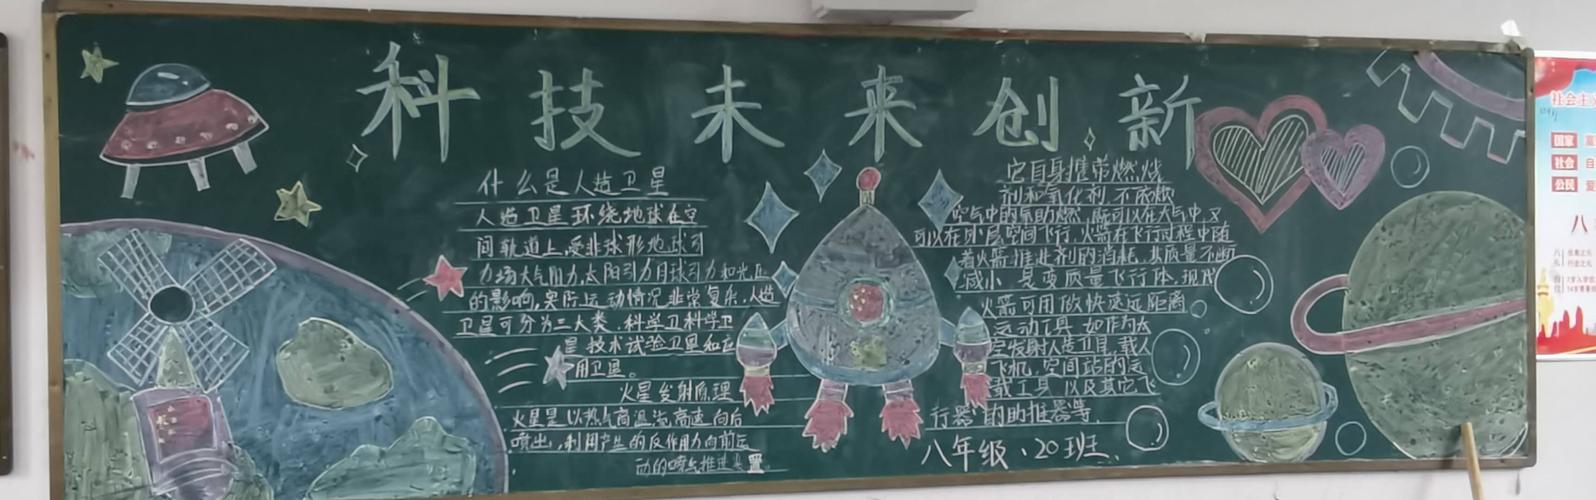 践行科技为民记丰县实验初级中学全国科普日黑板报评比活动